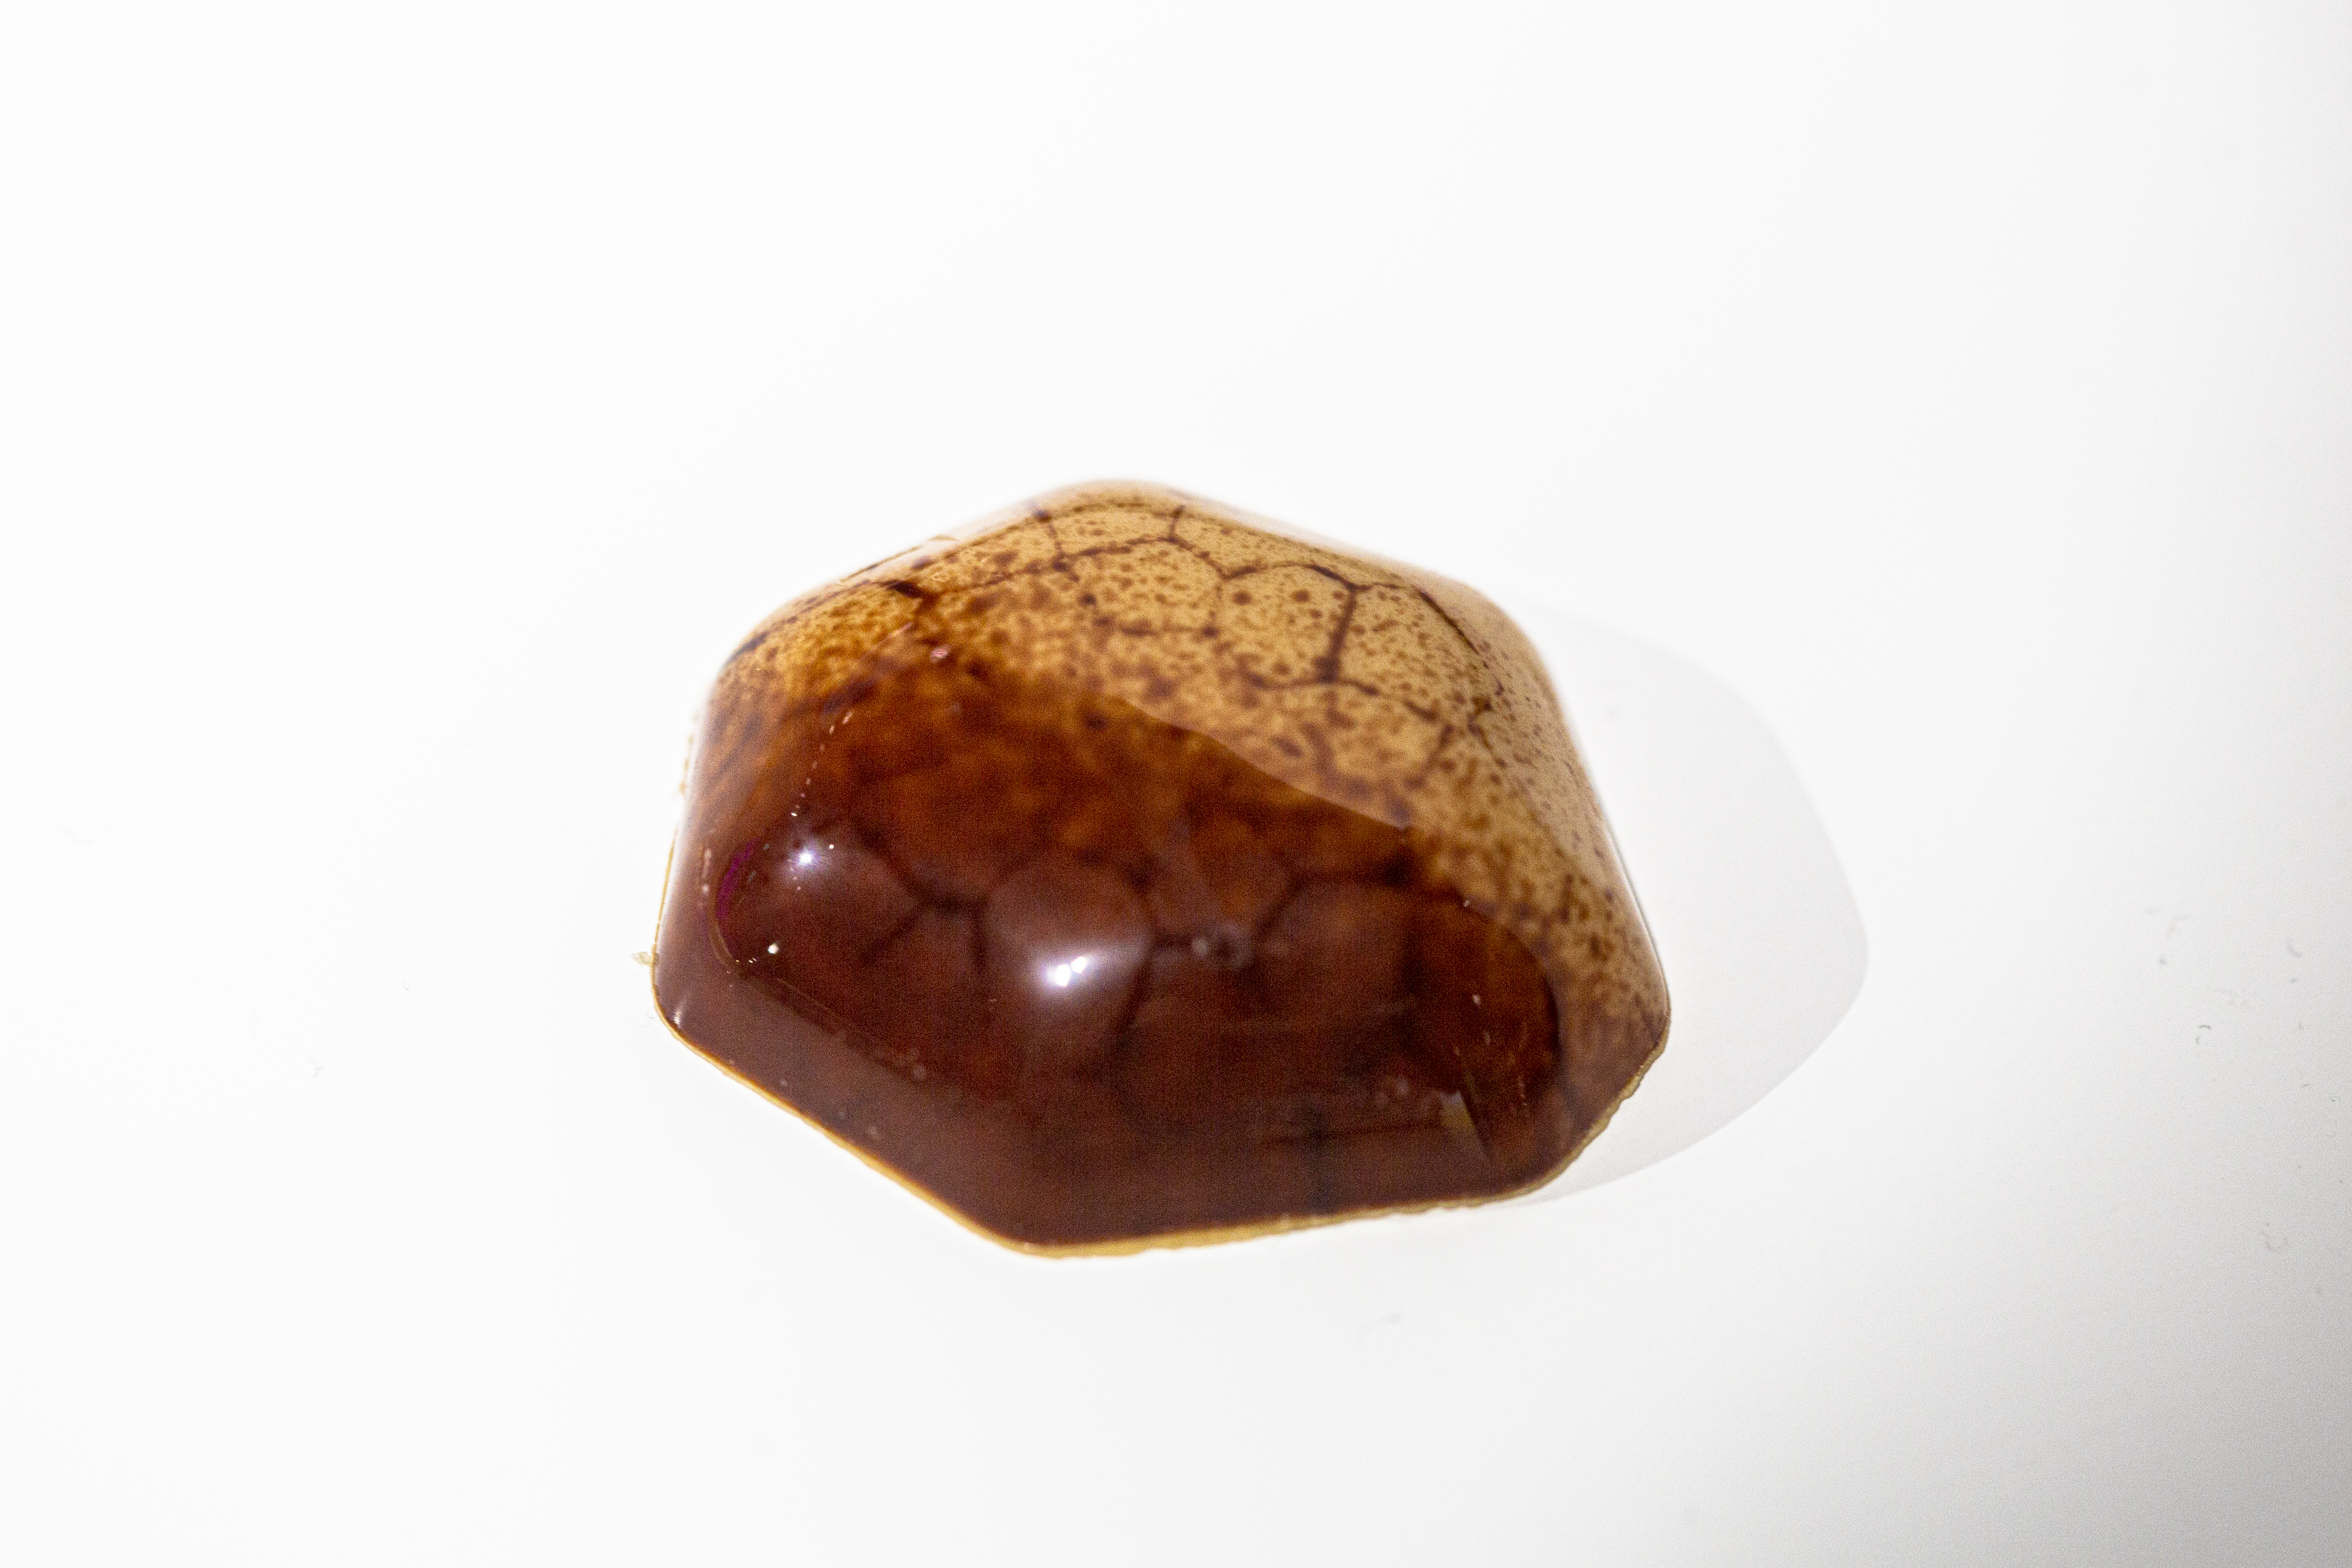 Lluc Clusellas' bonbon that resembles a scorched piece of land